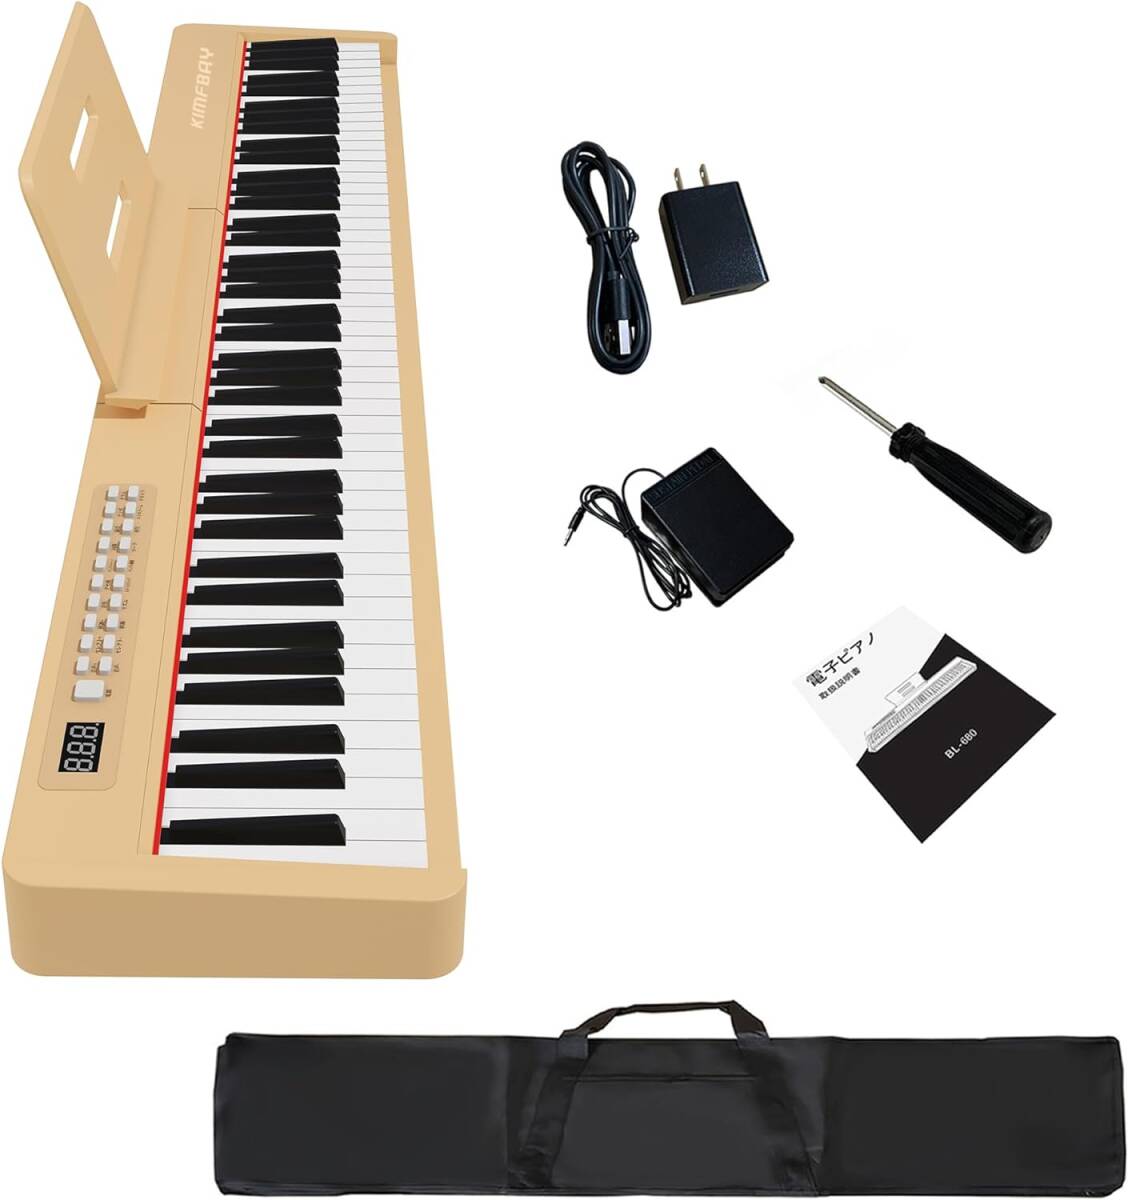 KIMFBAY электронное пианино 88 клавиатура MIDI соответствует легкий фортепьяно зарядка type двойной динамик японский язык .. примечание ., бежевый 